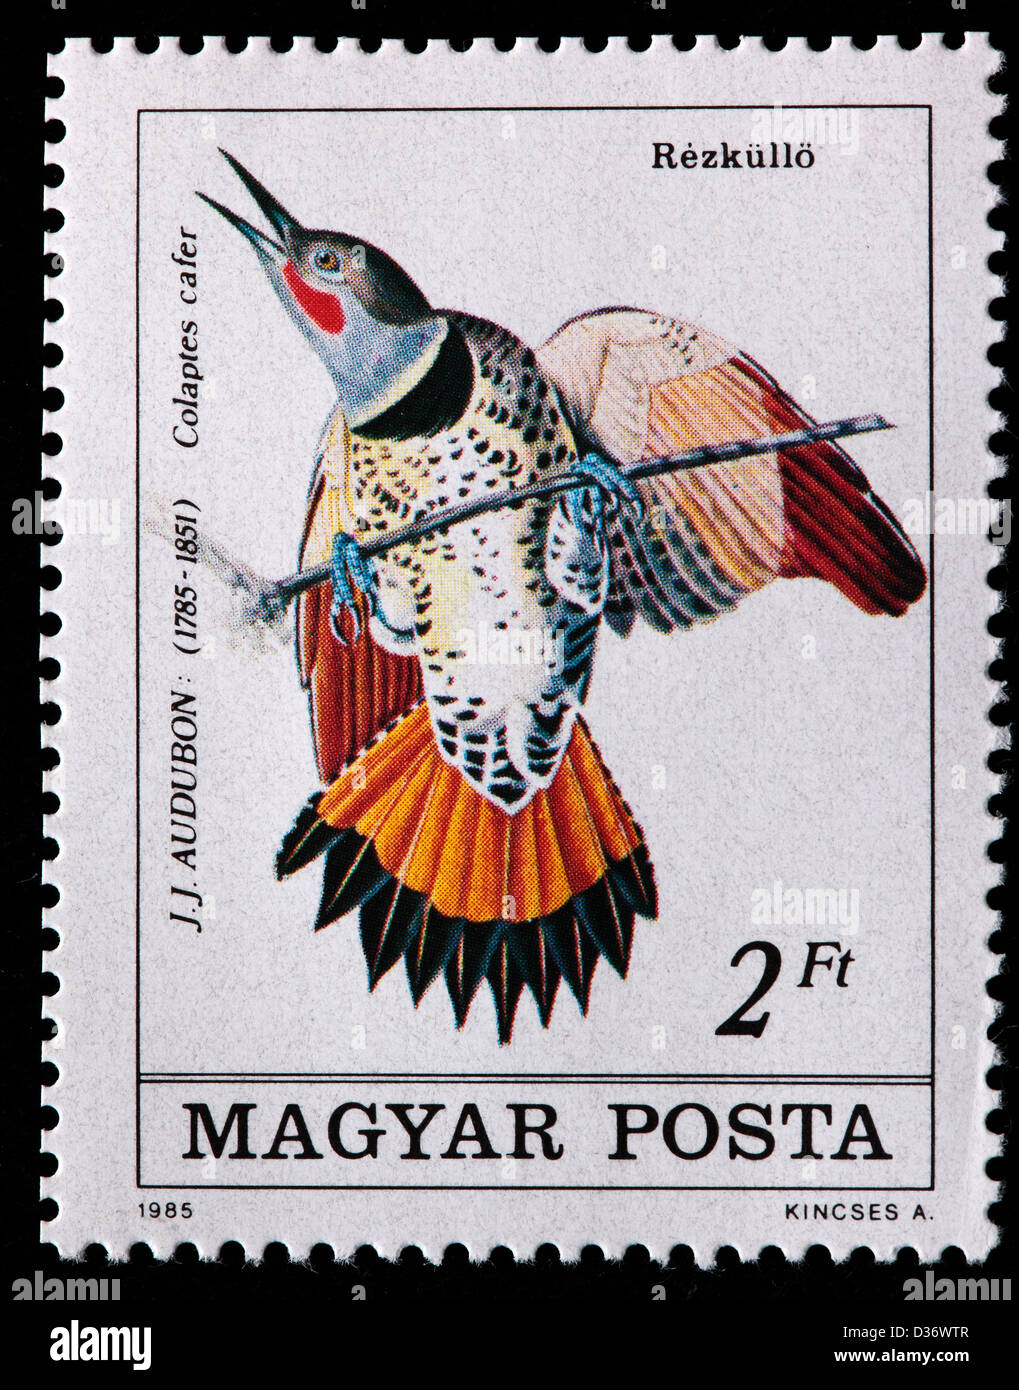 El Parpadeo, con astil de rojo (Colaptes auratus) cafer, ilustración de Audubon, sello, Hungría, 1985 Foto de stock